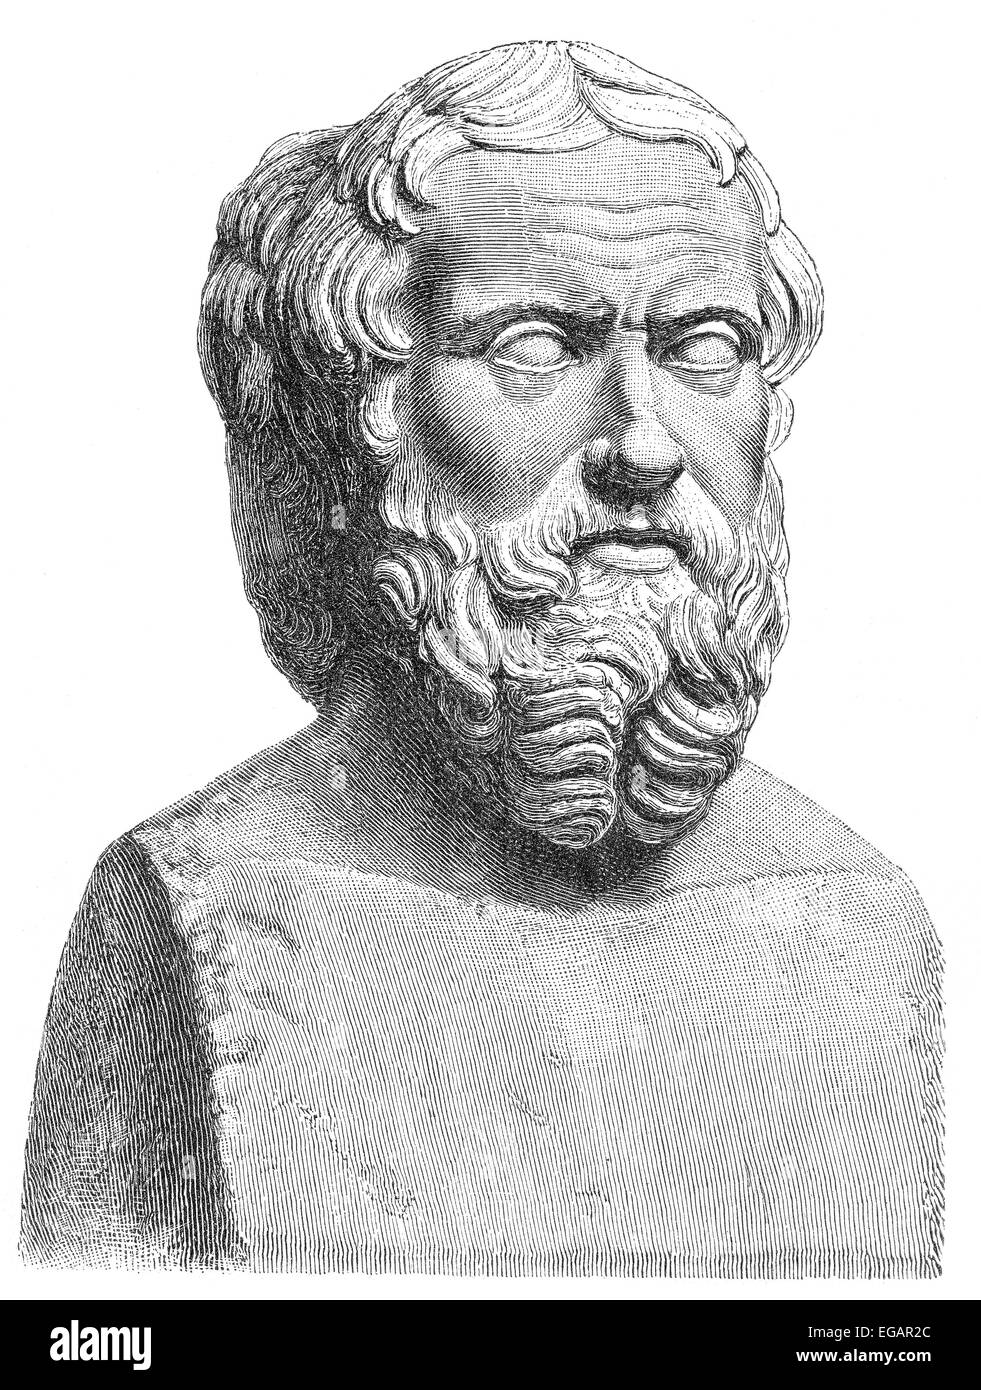 Herodot von Halikarnassos, 490-480 v. Chr. - um 424 v. Chr., einer antiken griechischen Historiker, Geograph und Ethnograph, Stockfoto